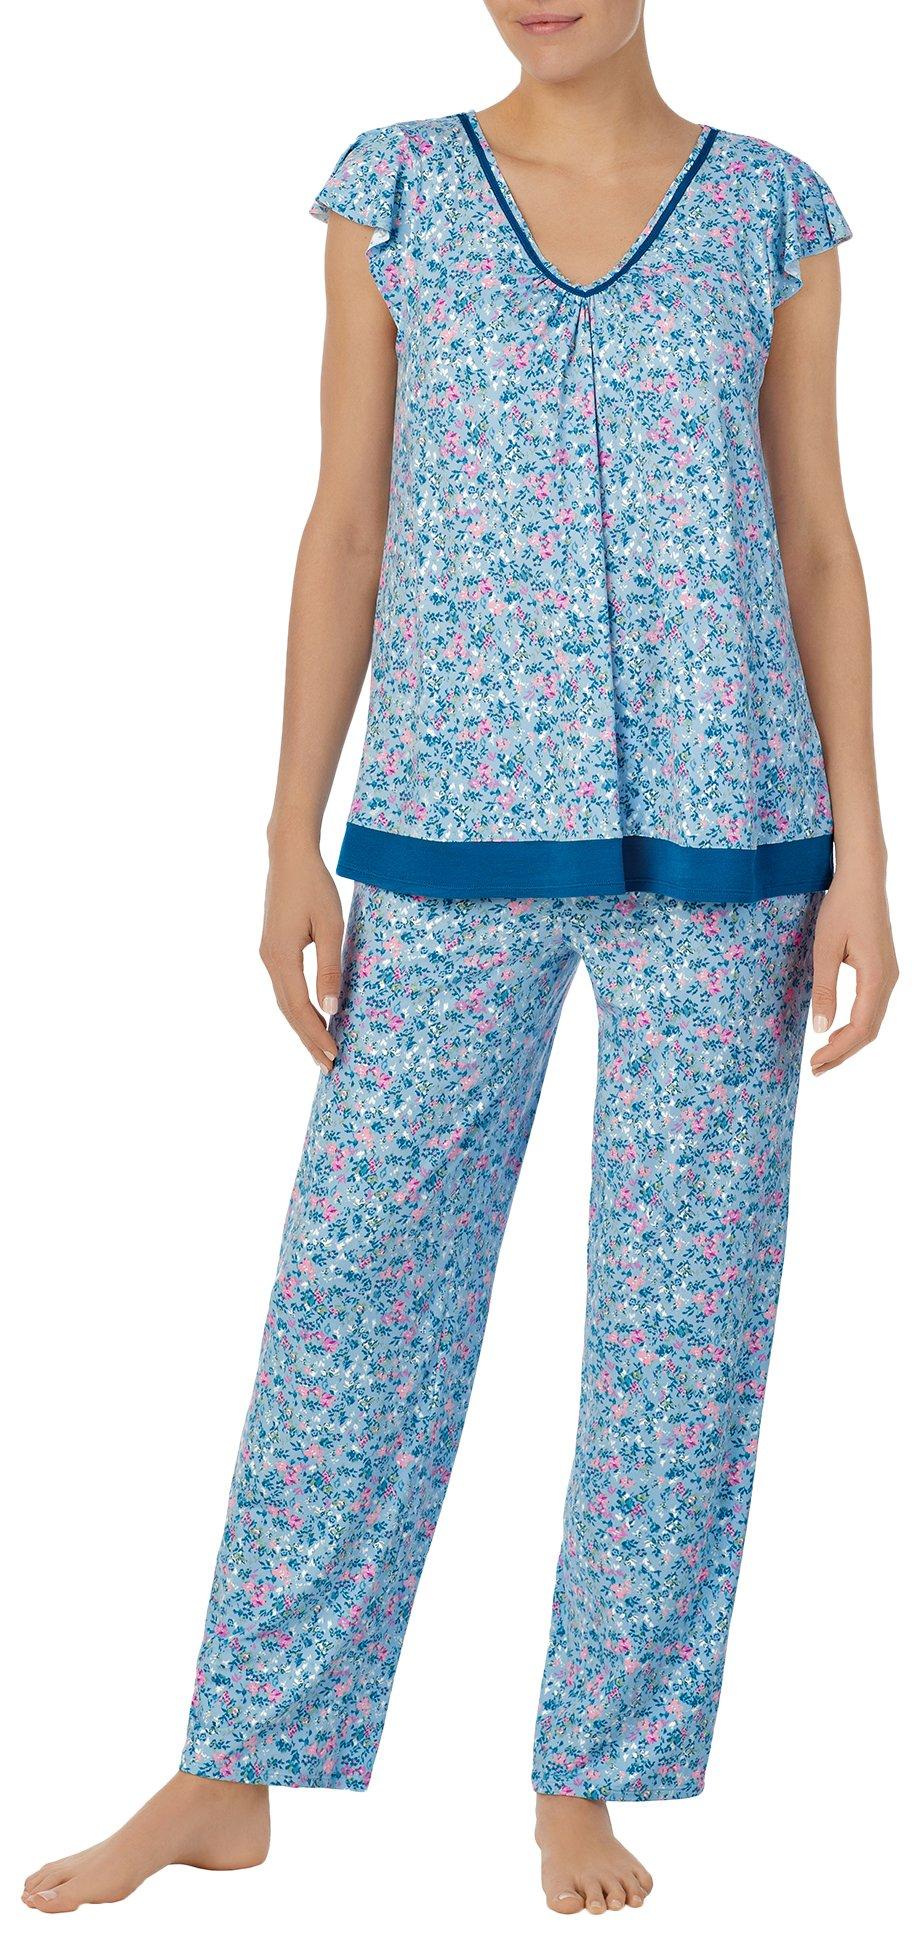 Ellen Tracy Womens 2-Pc. Floral Top & Pants